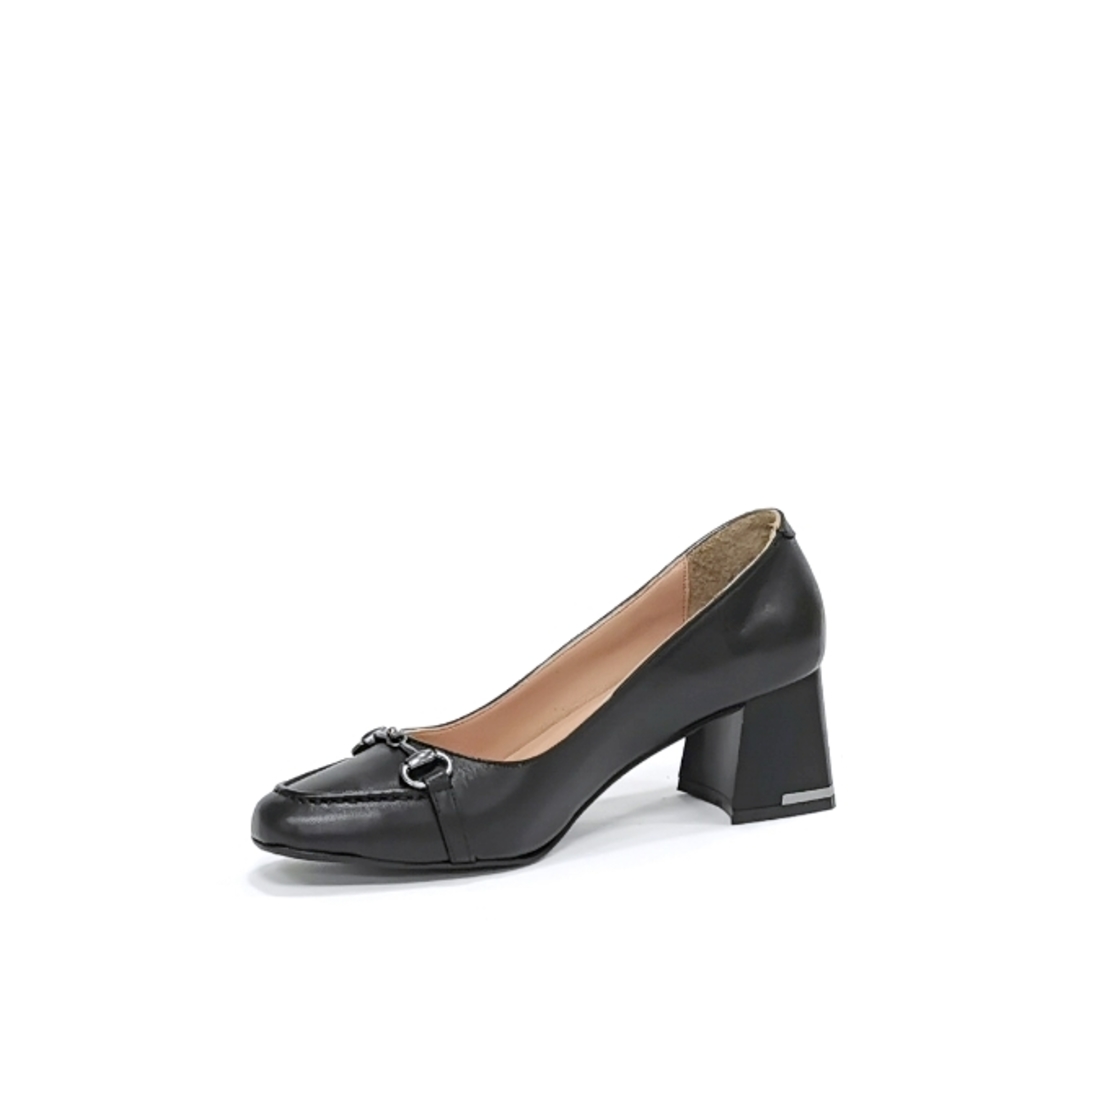 Женские элегантные туфли из натуральной кожи черного цвета/75702